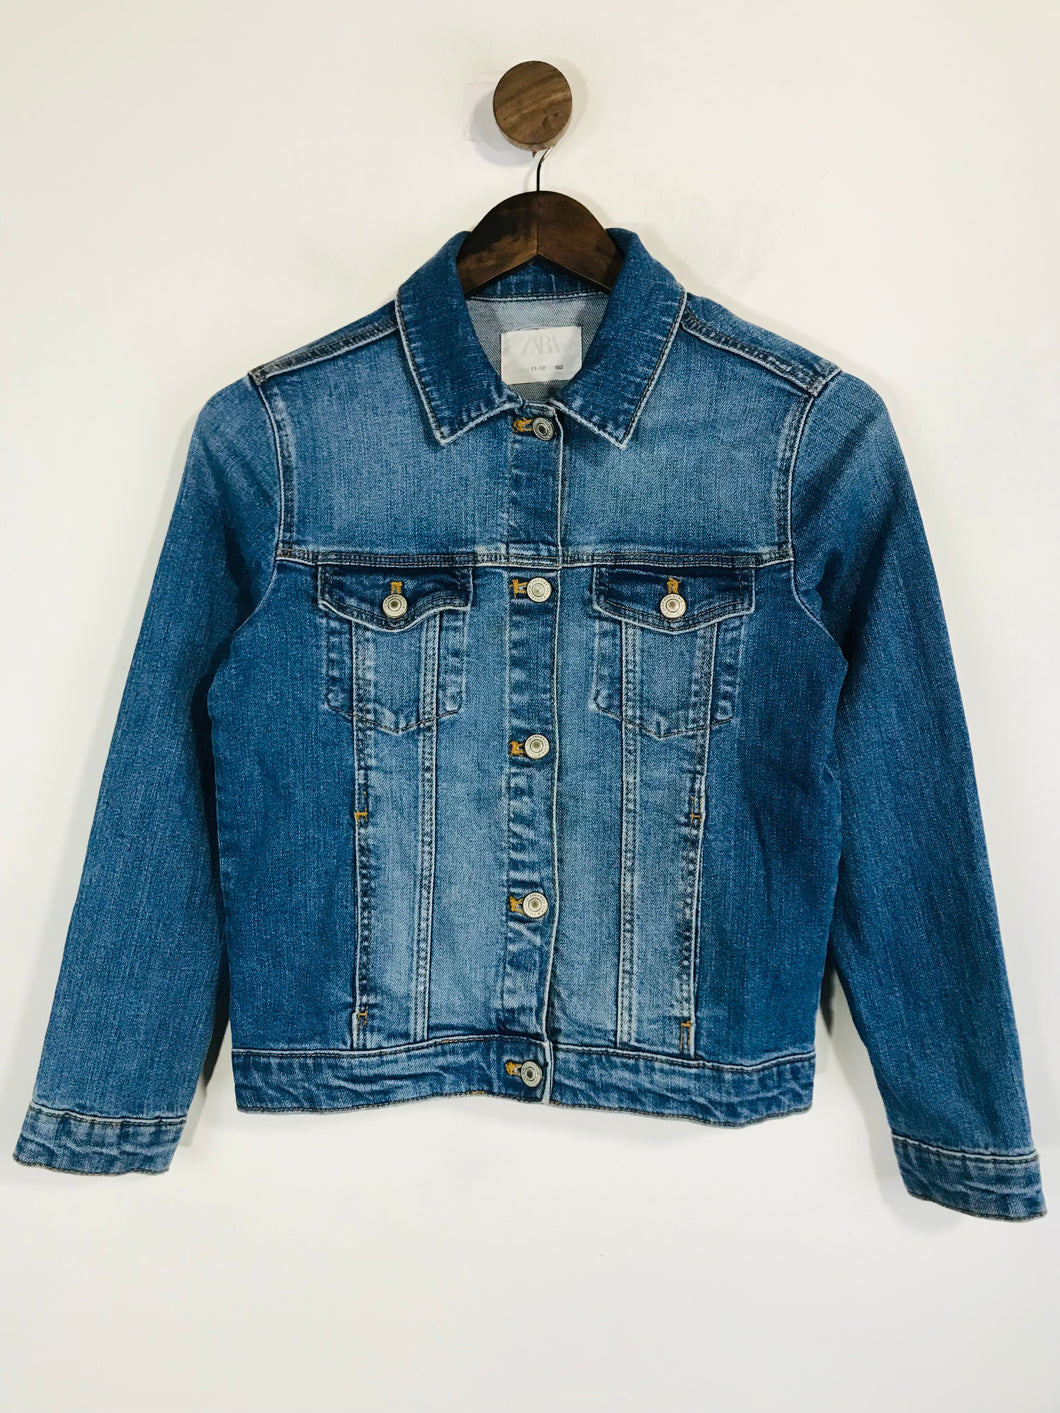 Zara Kid's Cotton Denim Jacket | 11-12 | Blue